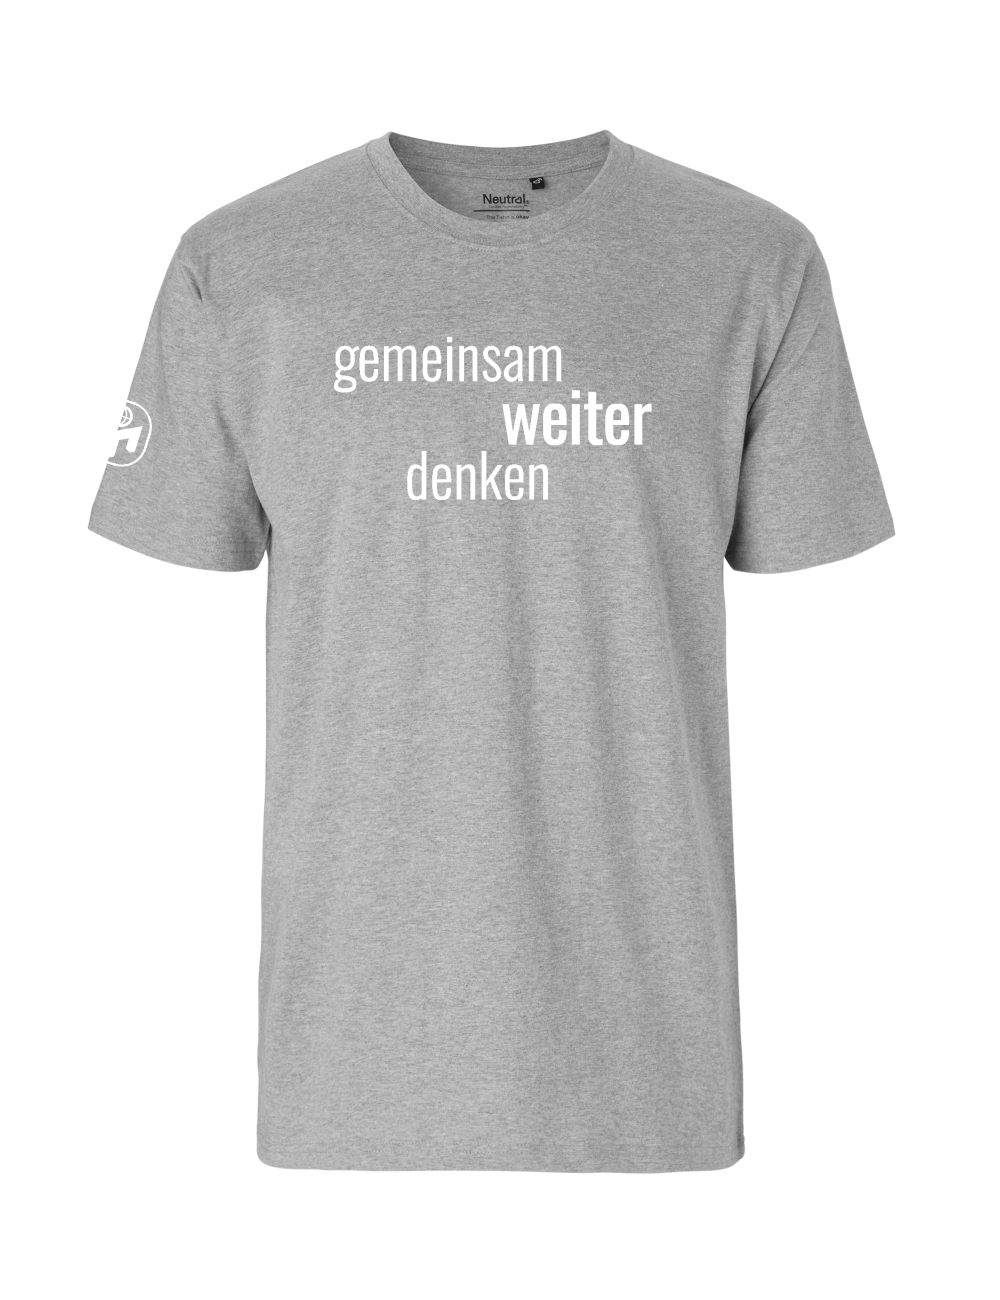 T-Shirt Herren "Gemeinsam weiter denken" Premium